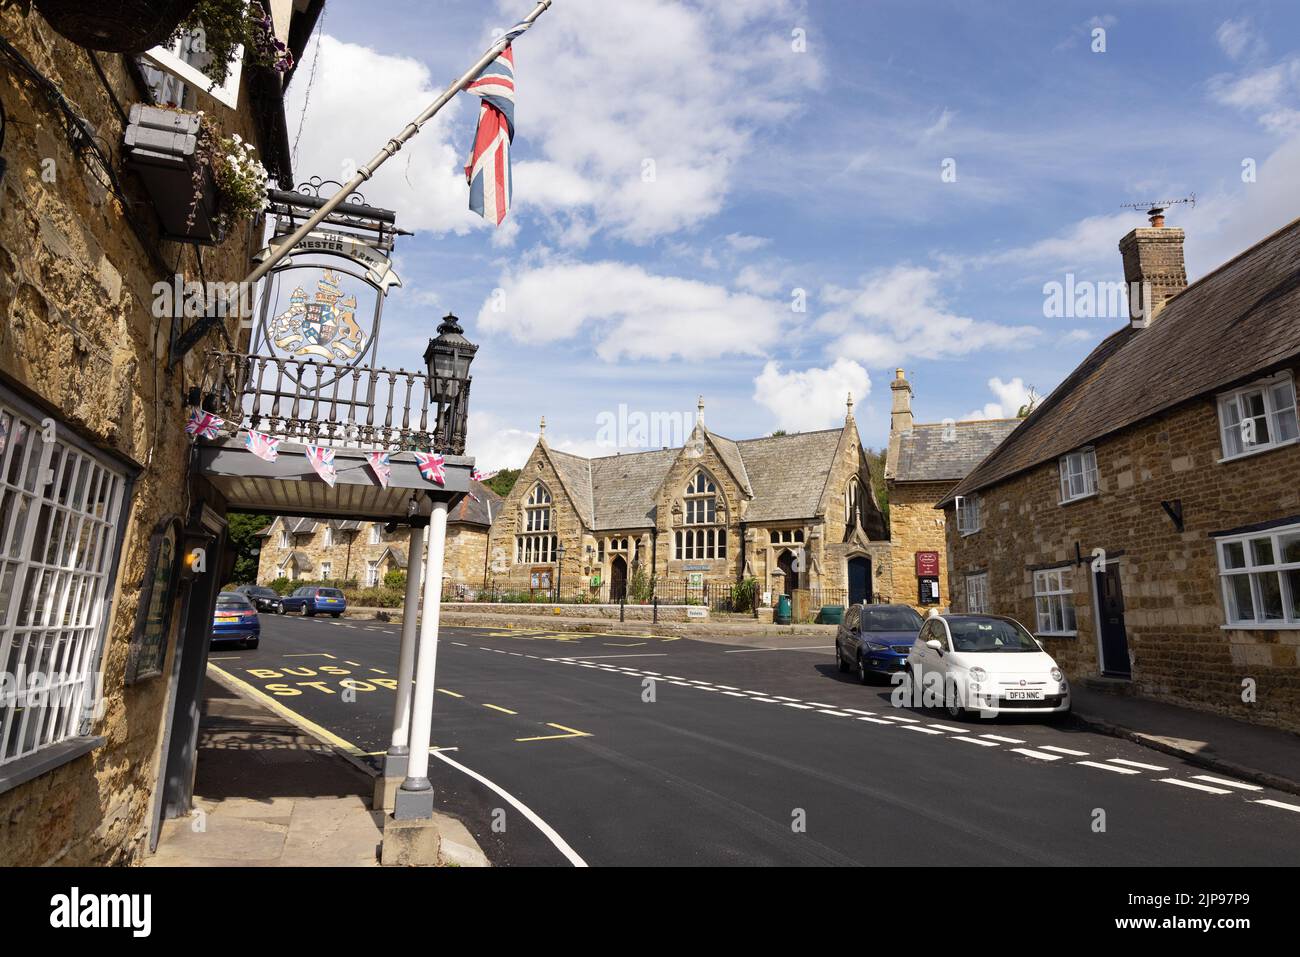 Village de Dorset; le village d'Abbotsbury à Dorset, avec le Ilchester Arms Hotel et le Strangways Hall, Angleterre du Sud-Ouest, Dorset, Royaume-Uni Banque D'Images